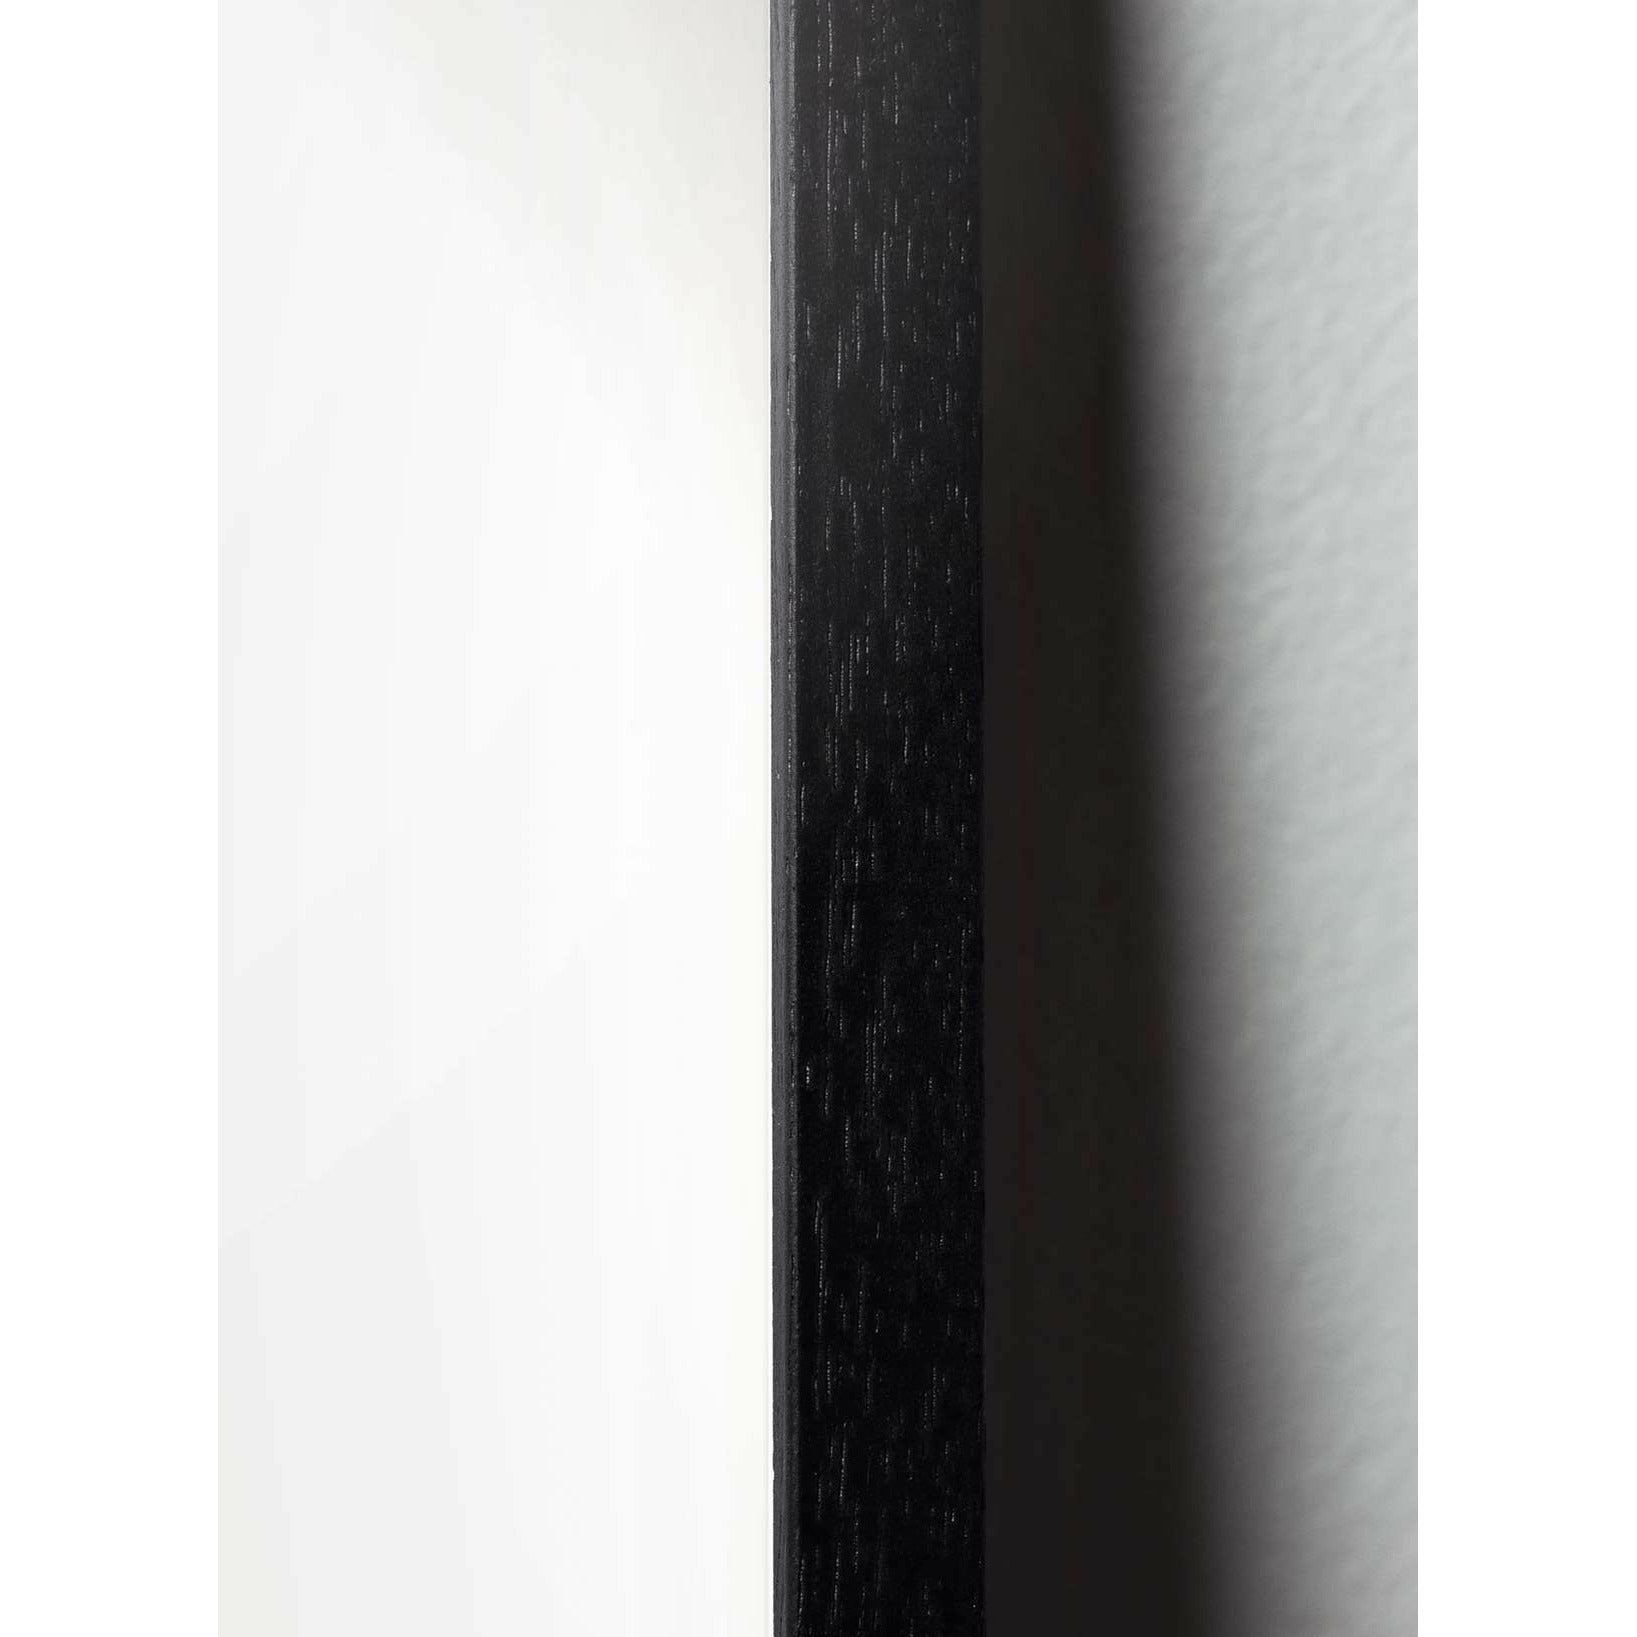 Brainchild Affiche de l'icône de conception de neige, cadre en bois laqué noir 70 x100 cm, gris